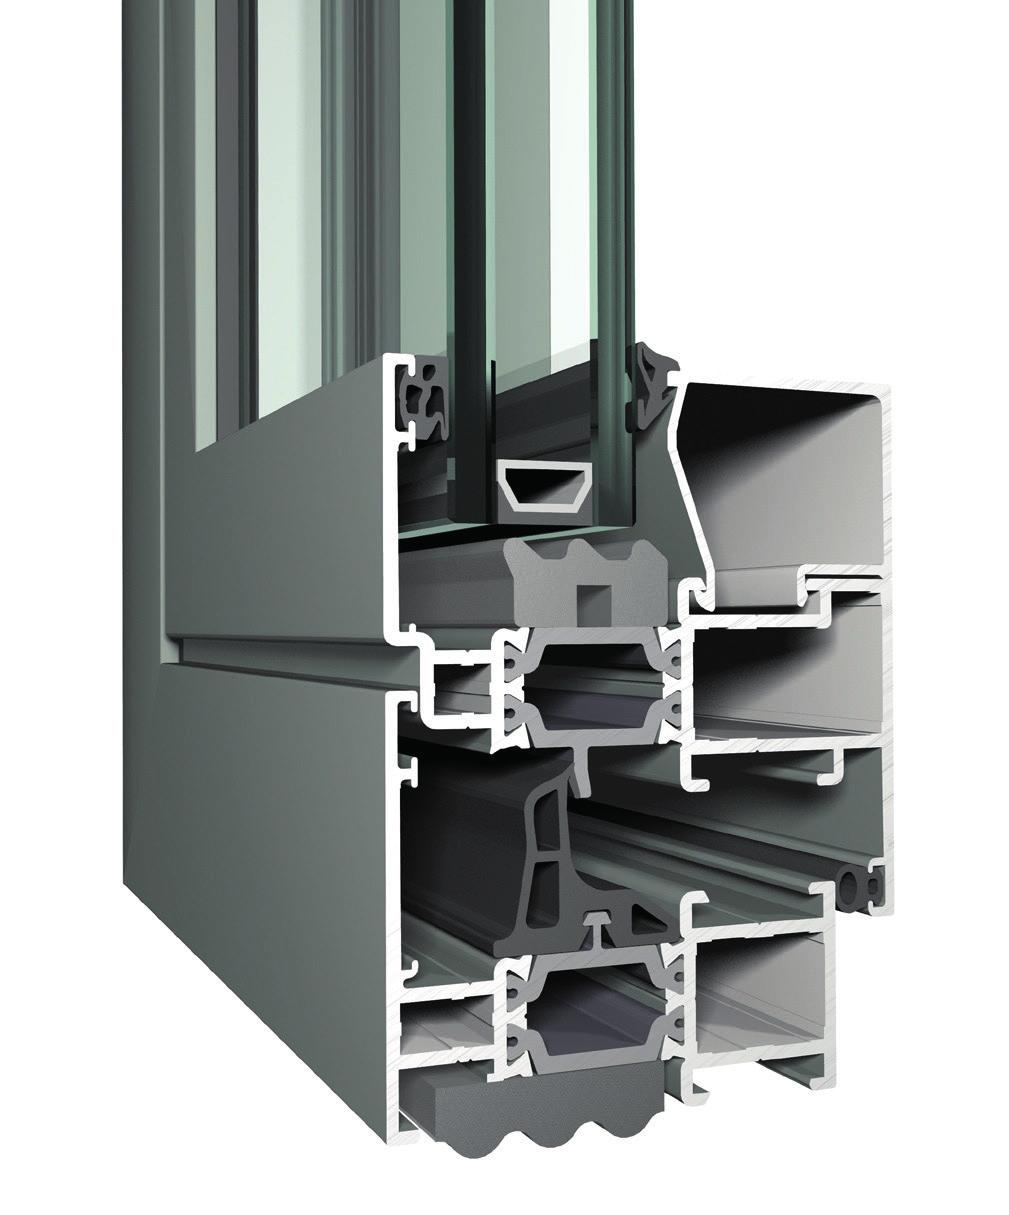 Profil CS 8 Fenster- und Tür- System Thermisch getrenntes 3-Kammerprofil für Fenster und Türen Geeignet für ussenelemente Unterschiedliche Farblackierung innen und aussen - ICOLOR möglich Imitation